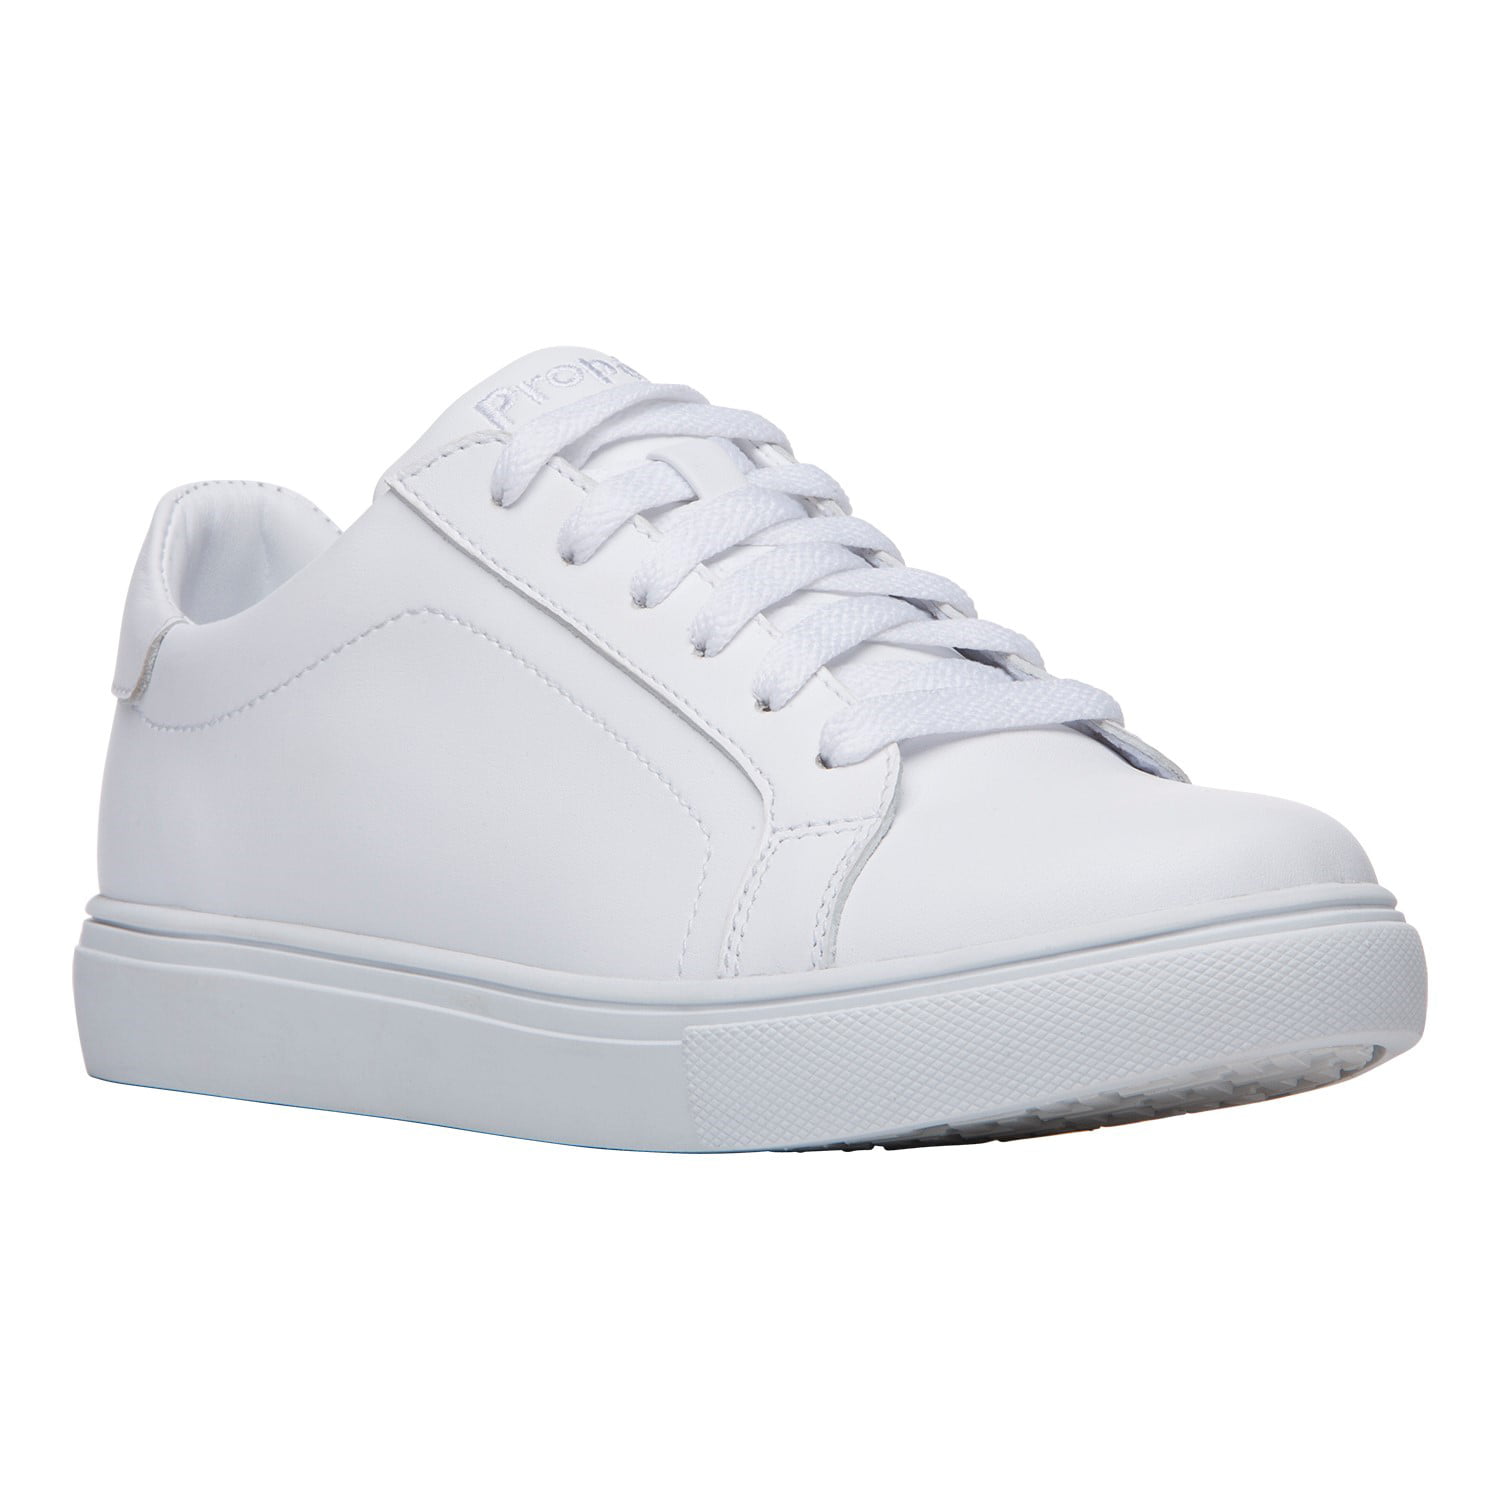 Slip Resistant Shoe - White 